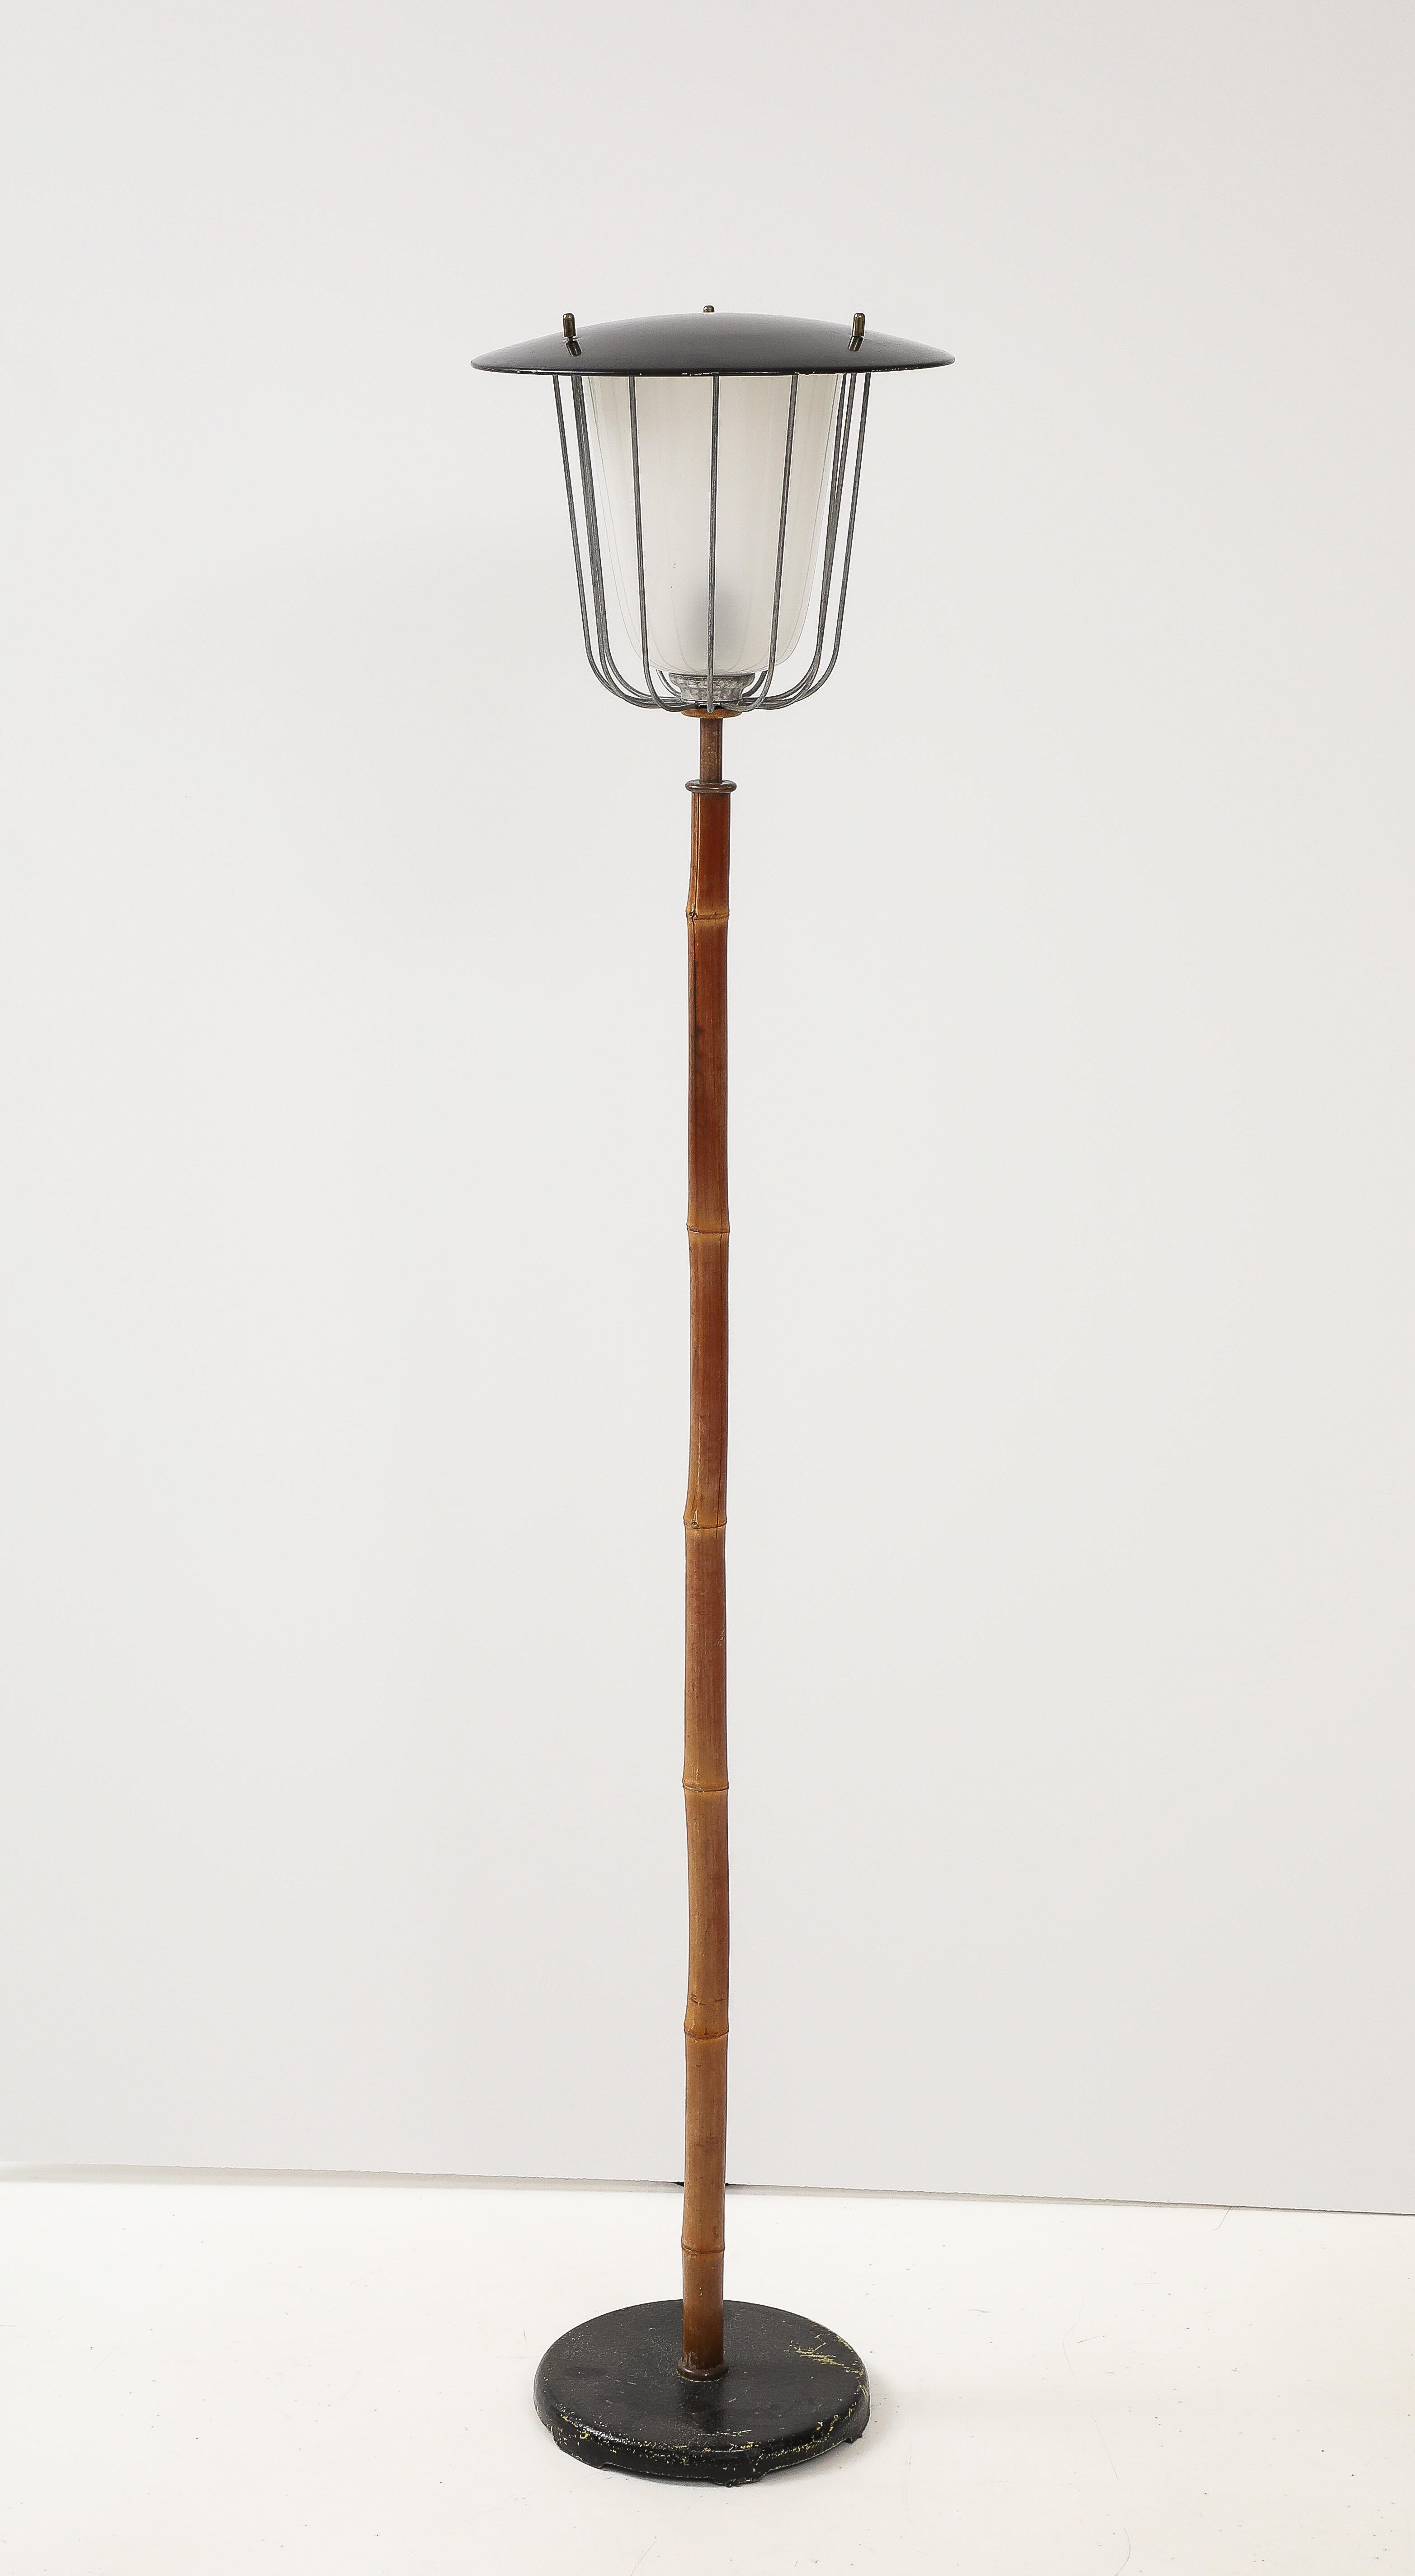 Le charmant et très rare lampadaire vintage Mid Century Modern est une véritable icône du design viennois de 1960.
Le lampadaire no 2081 nommé Karla a été conçu par J. T. Kalmar et produit par Kalmar vers 1960 à Vienne.
La lampe est fabriquée en